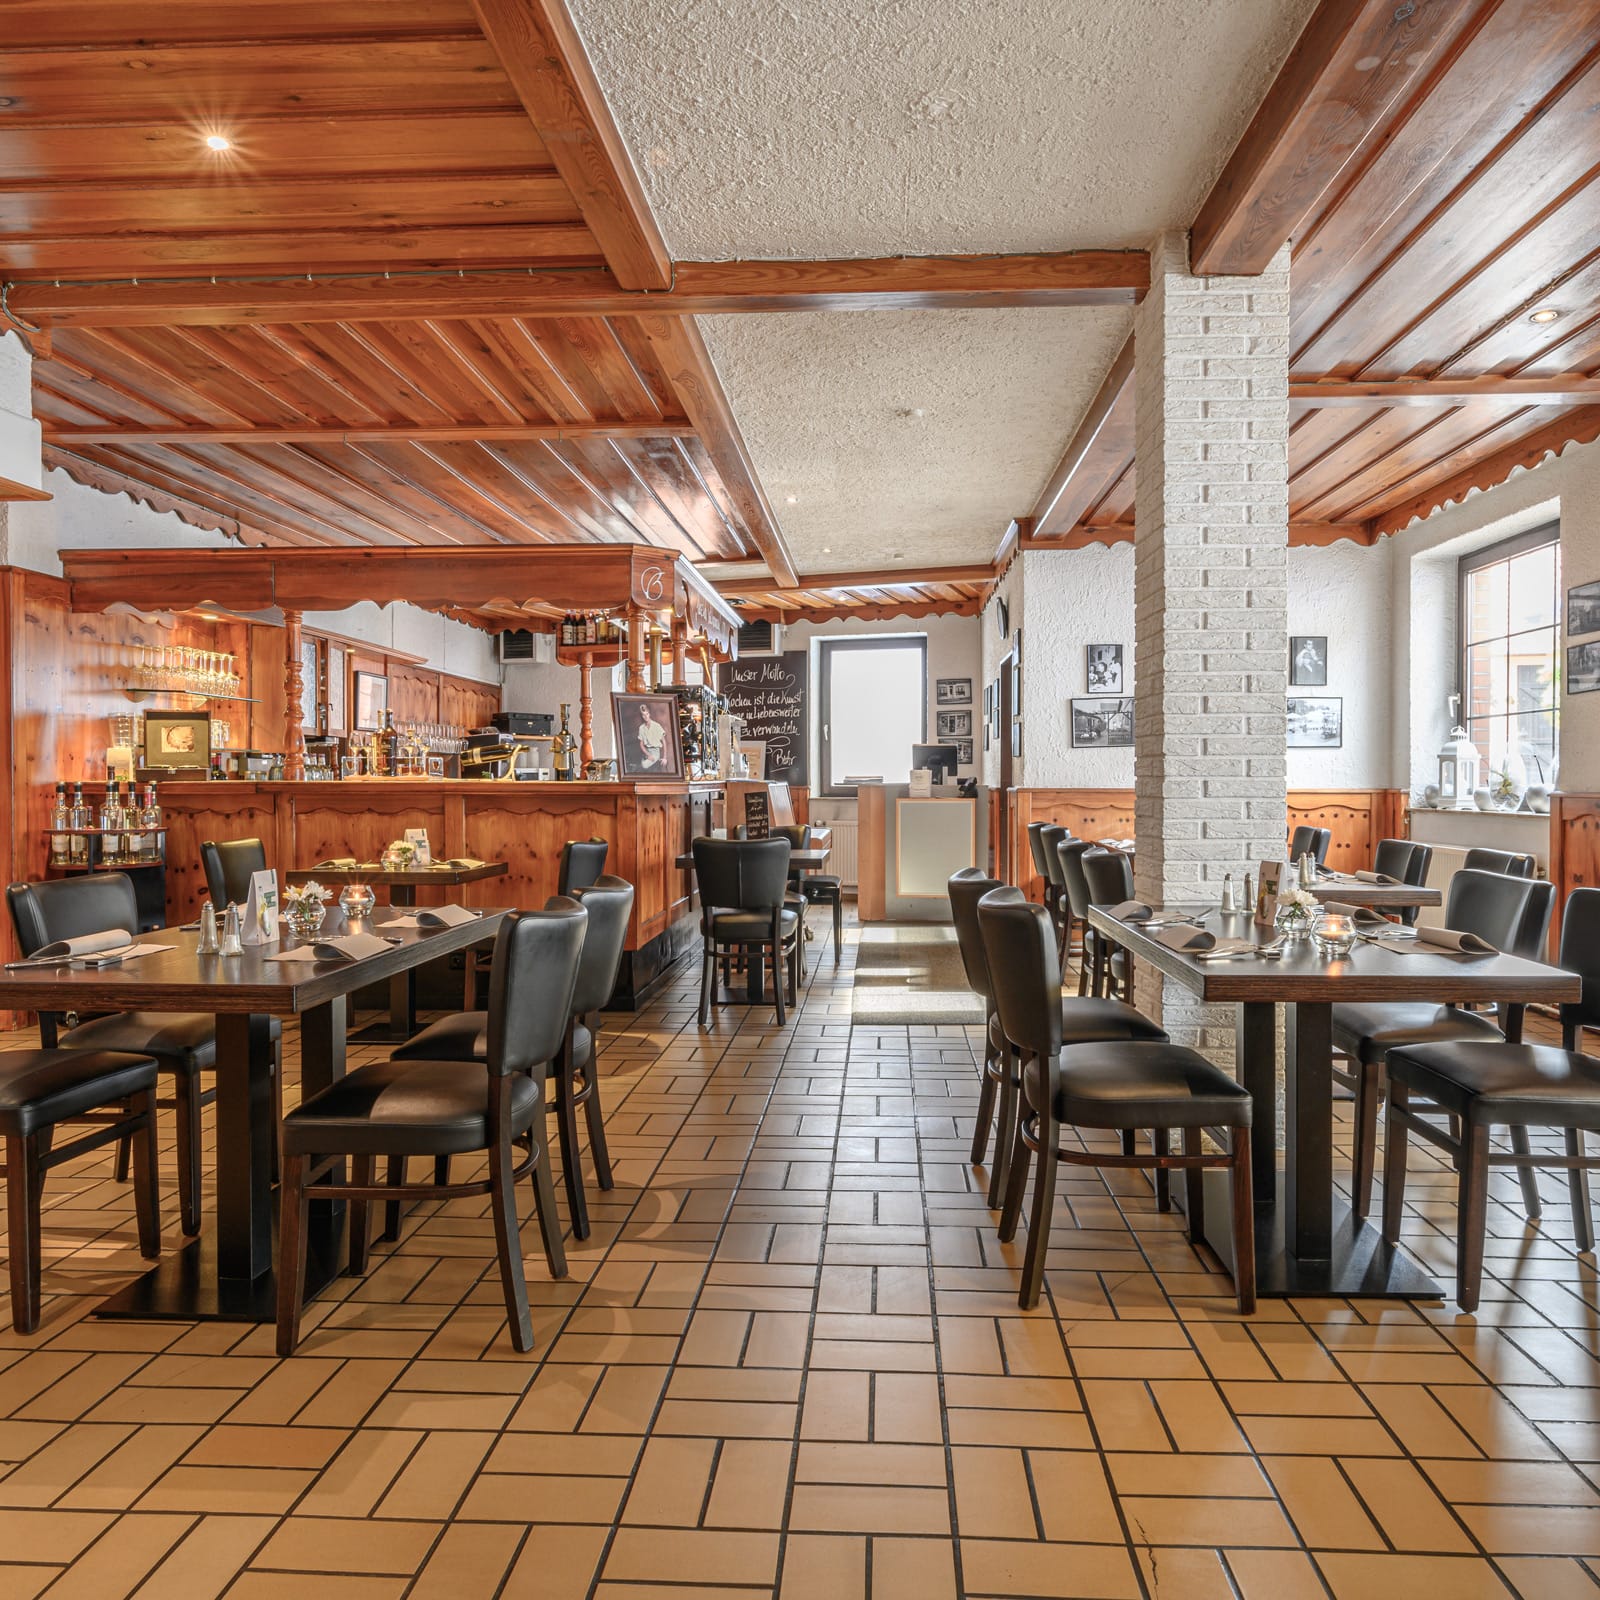 Benters Schlemmerdeel Restaurant 2019